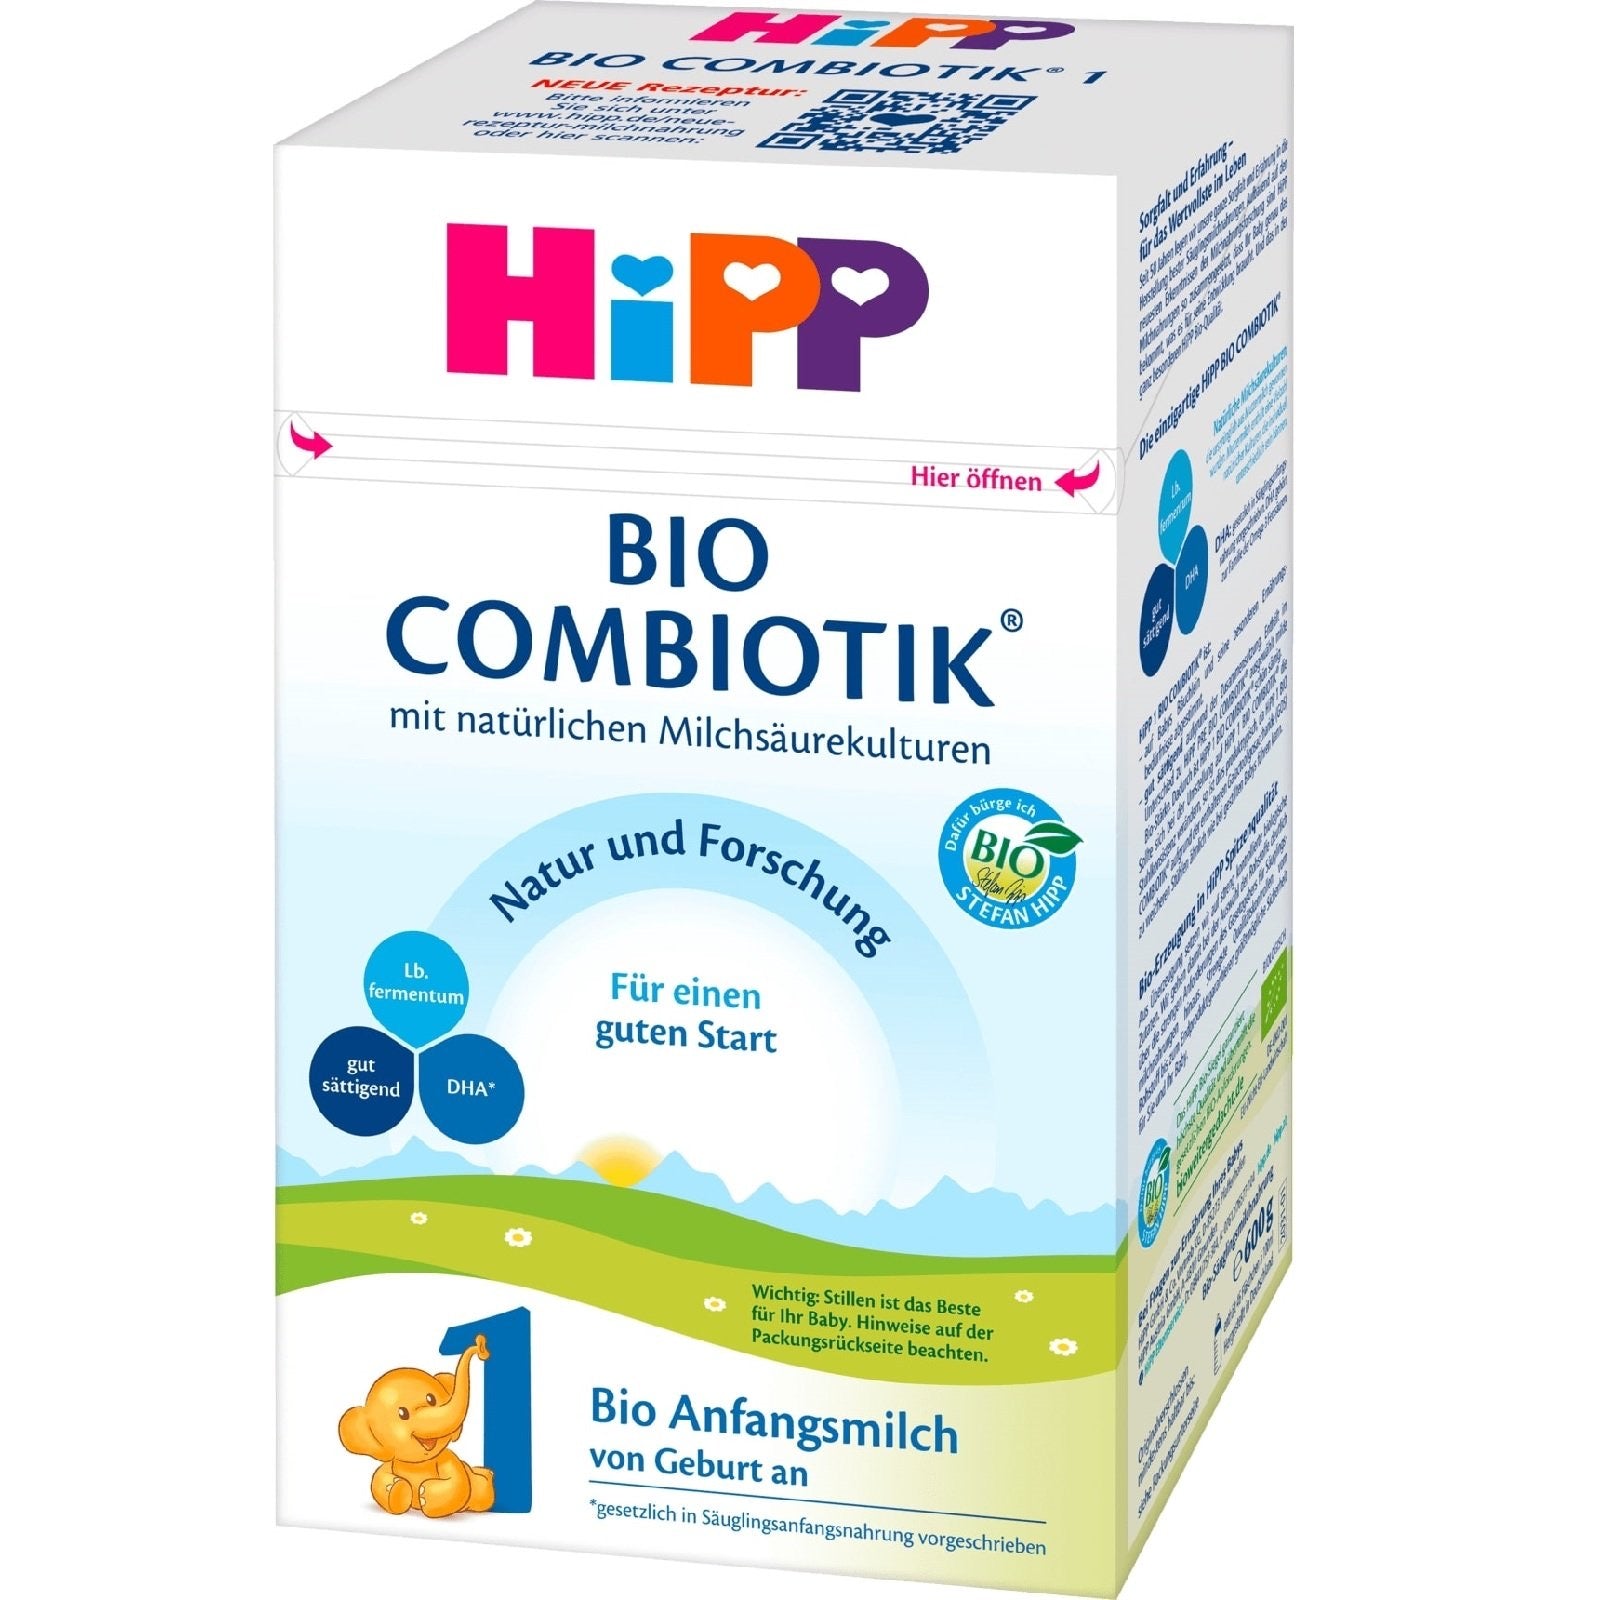 HiPP Stage 1 German - Organic Combiotik Formula (600g) (8 boxes)